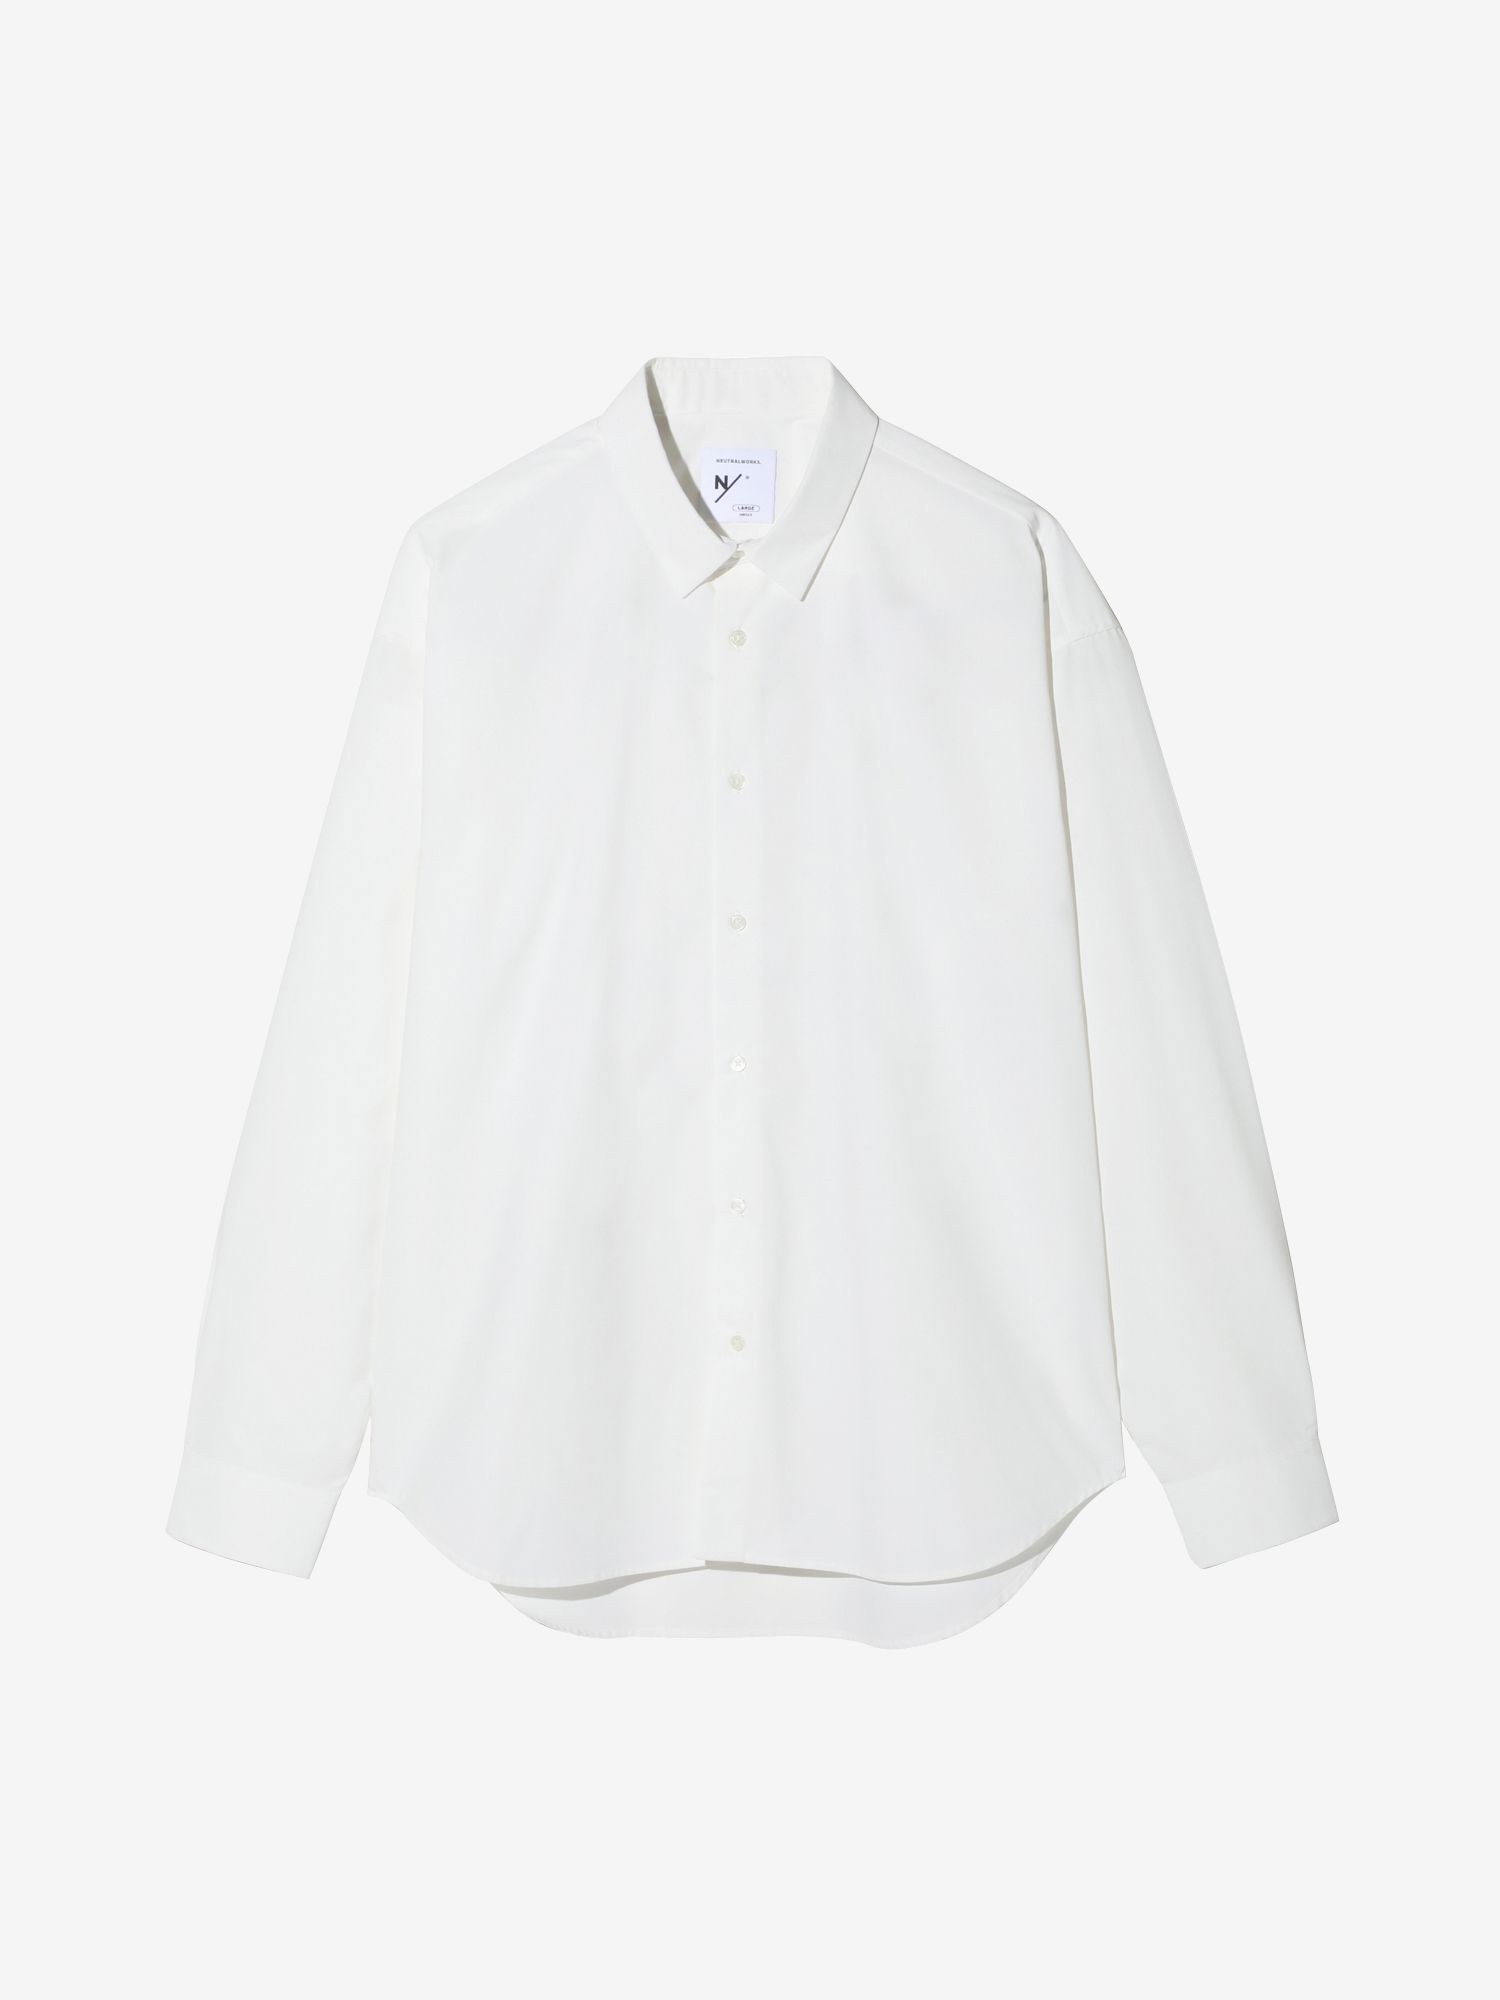 MXP ロングスリーブスマートブロードボックスシャツ（ユニセックス 